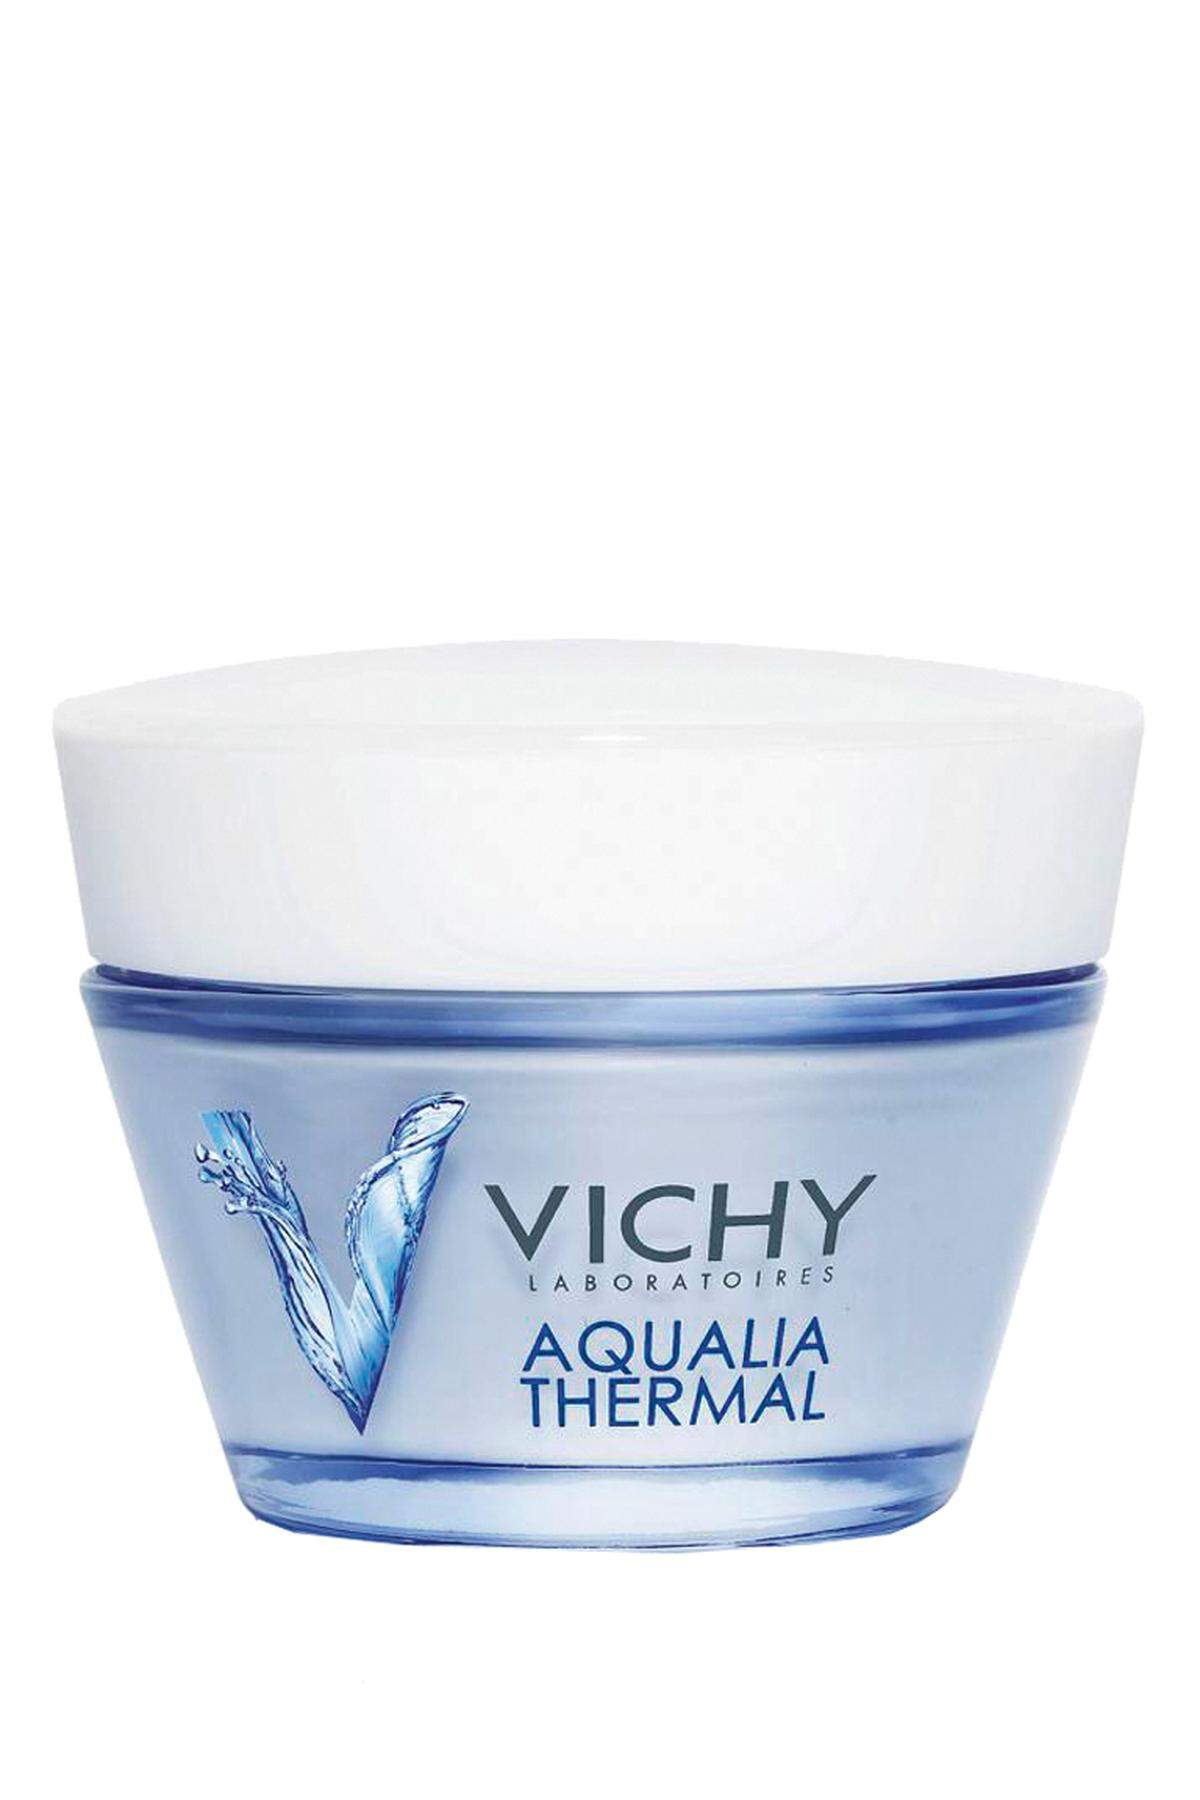 von Vichy für empfindliche, sehr feuchtigkeitsarme Haut. 50 ml, 17,60 Euro.